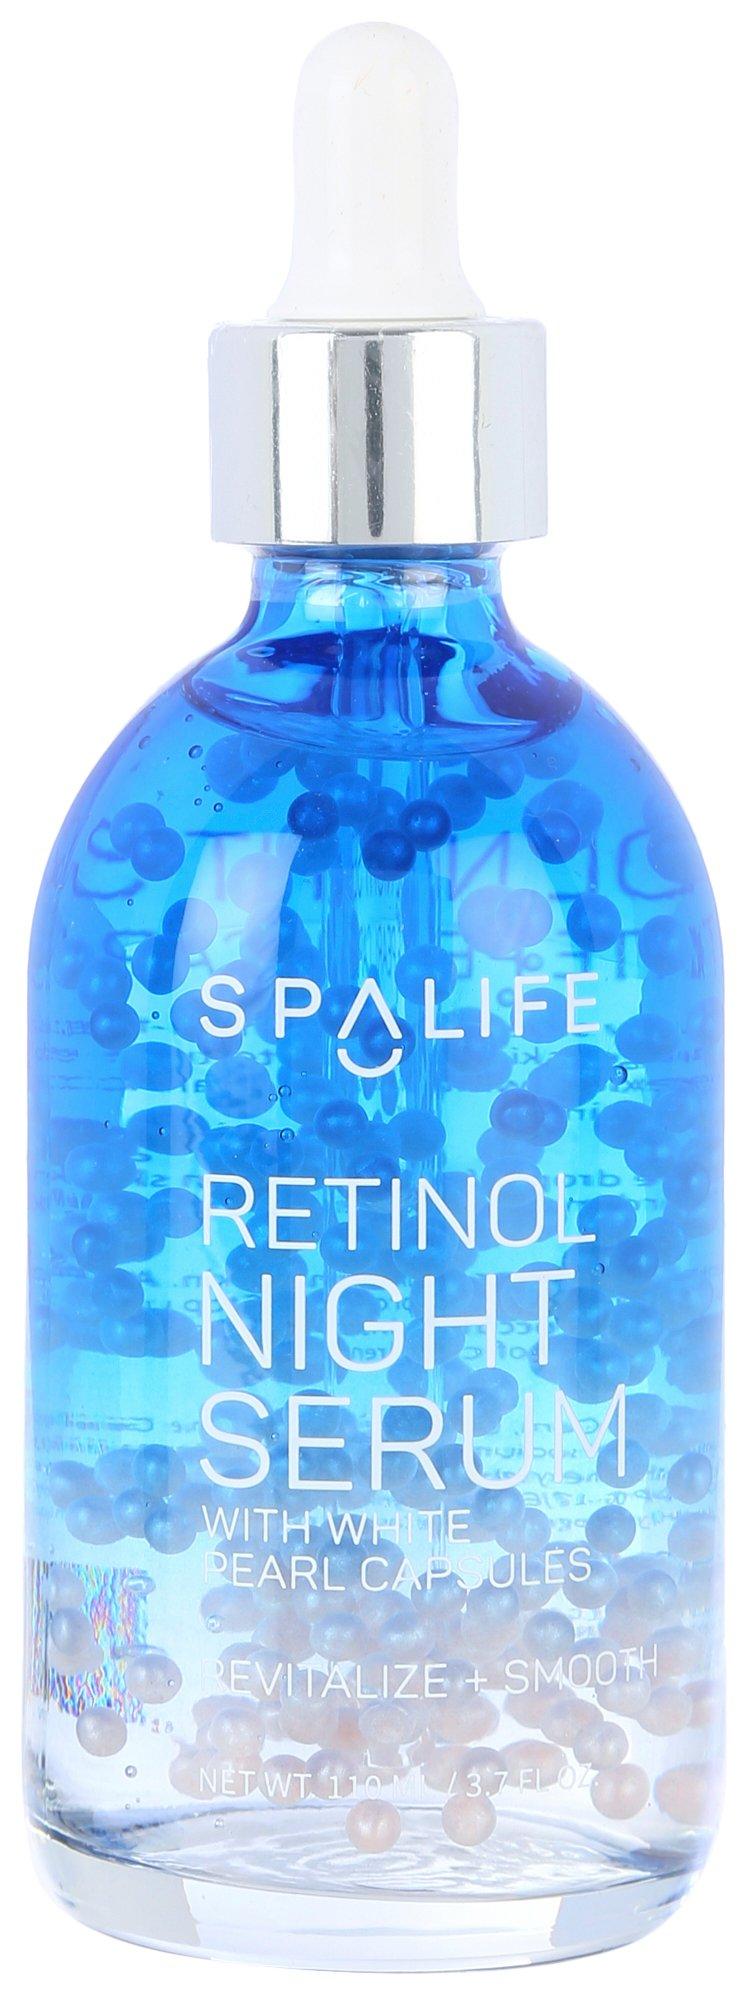 SpaLife Retinol Night Serum